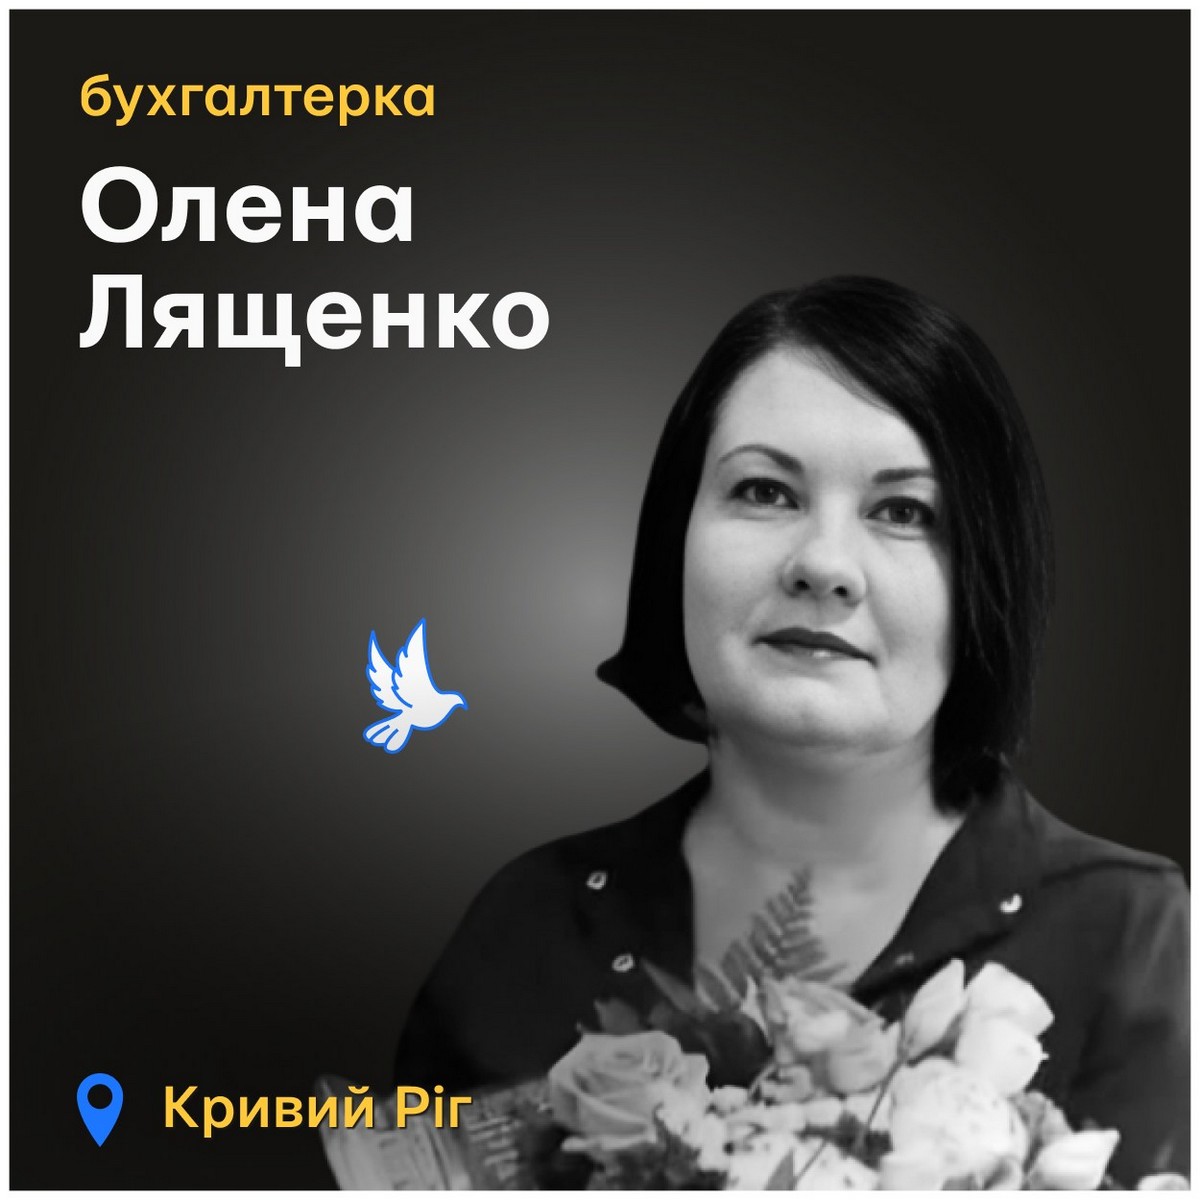 Вбиті росією: Олена Лященко працювала бухгалтеркою у «Метінвест Бізнес Сервіс». Разом з нею загинули ще 9 людей.